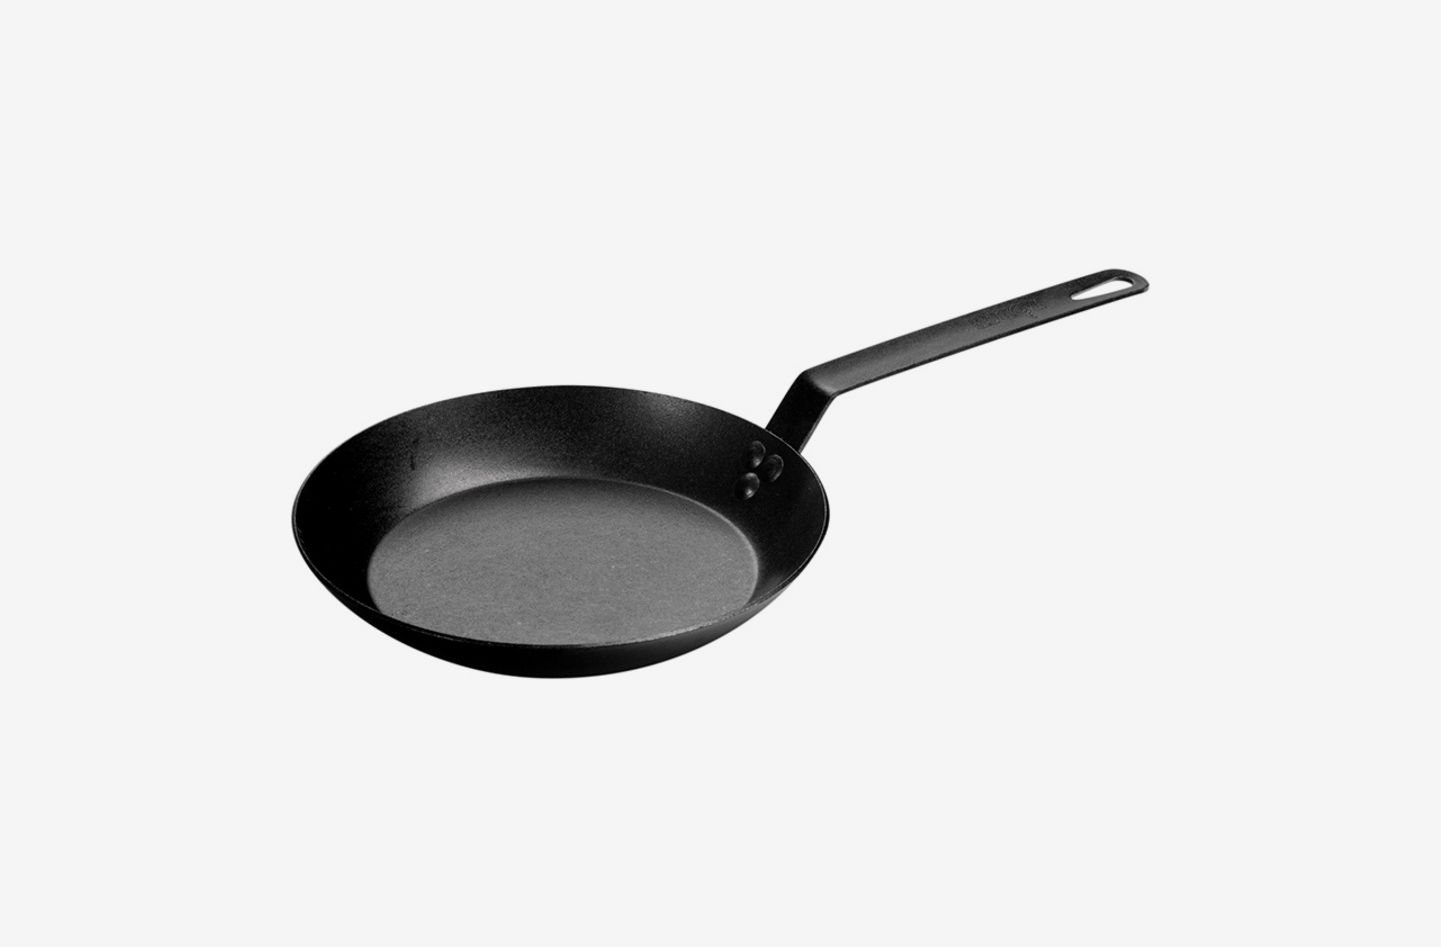 13 best non-stick frying pans